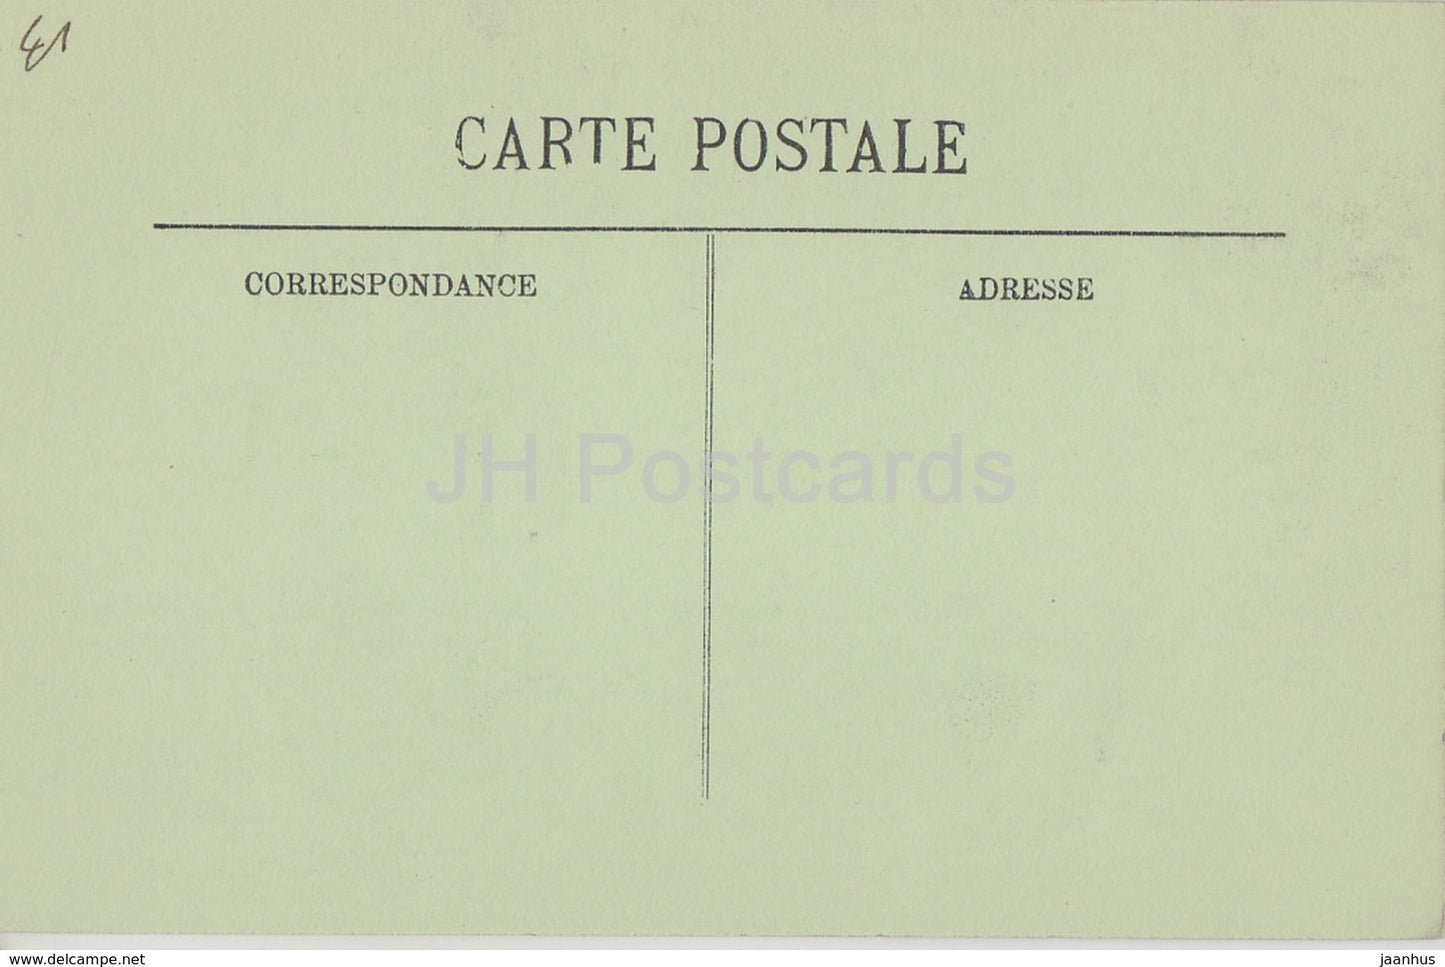 Blois - Le Chateau - L'Aile Francois Ier - La Bibliotheque de Catherine de Medicis - alte Postkarte - Frankreich - unbenutzt